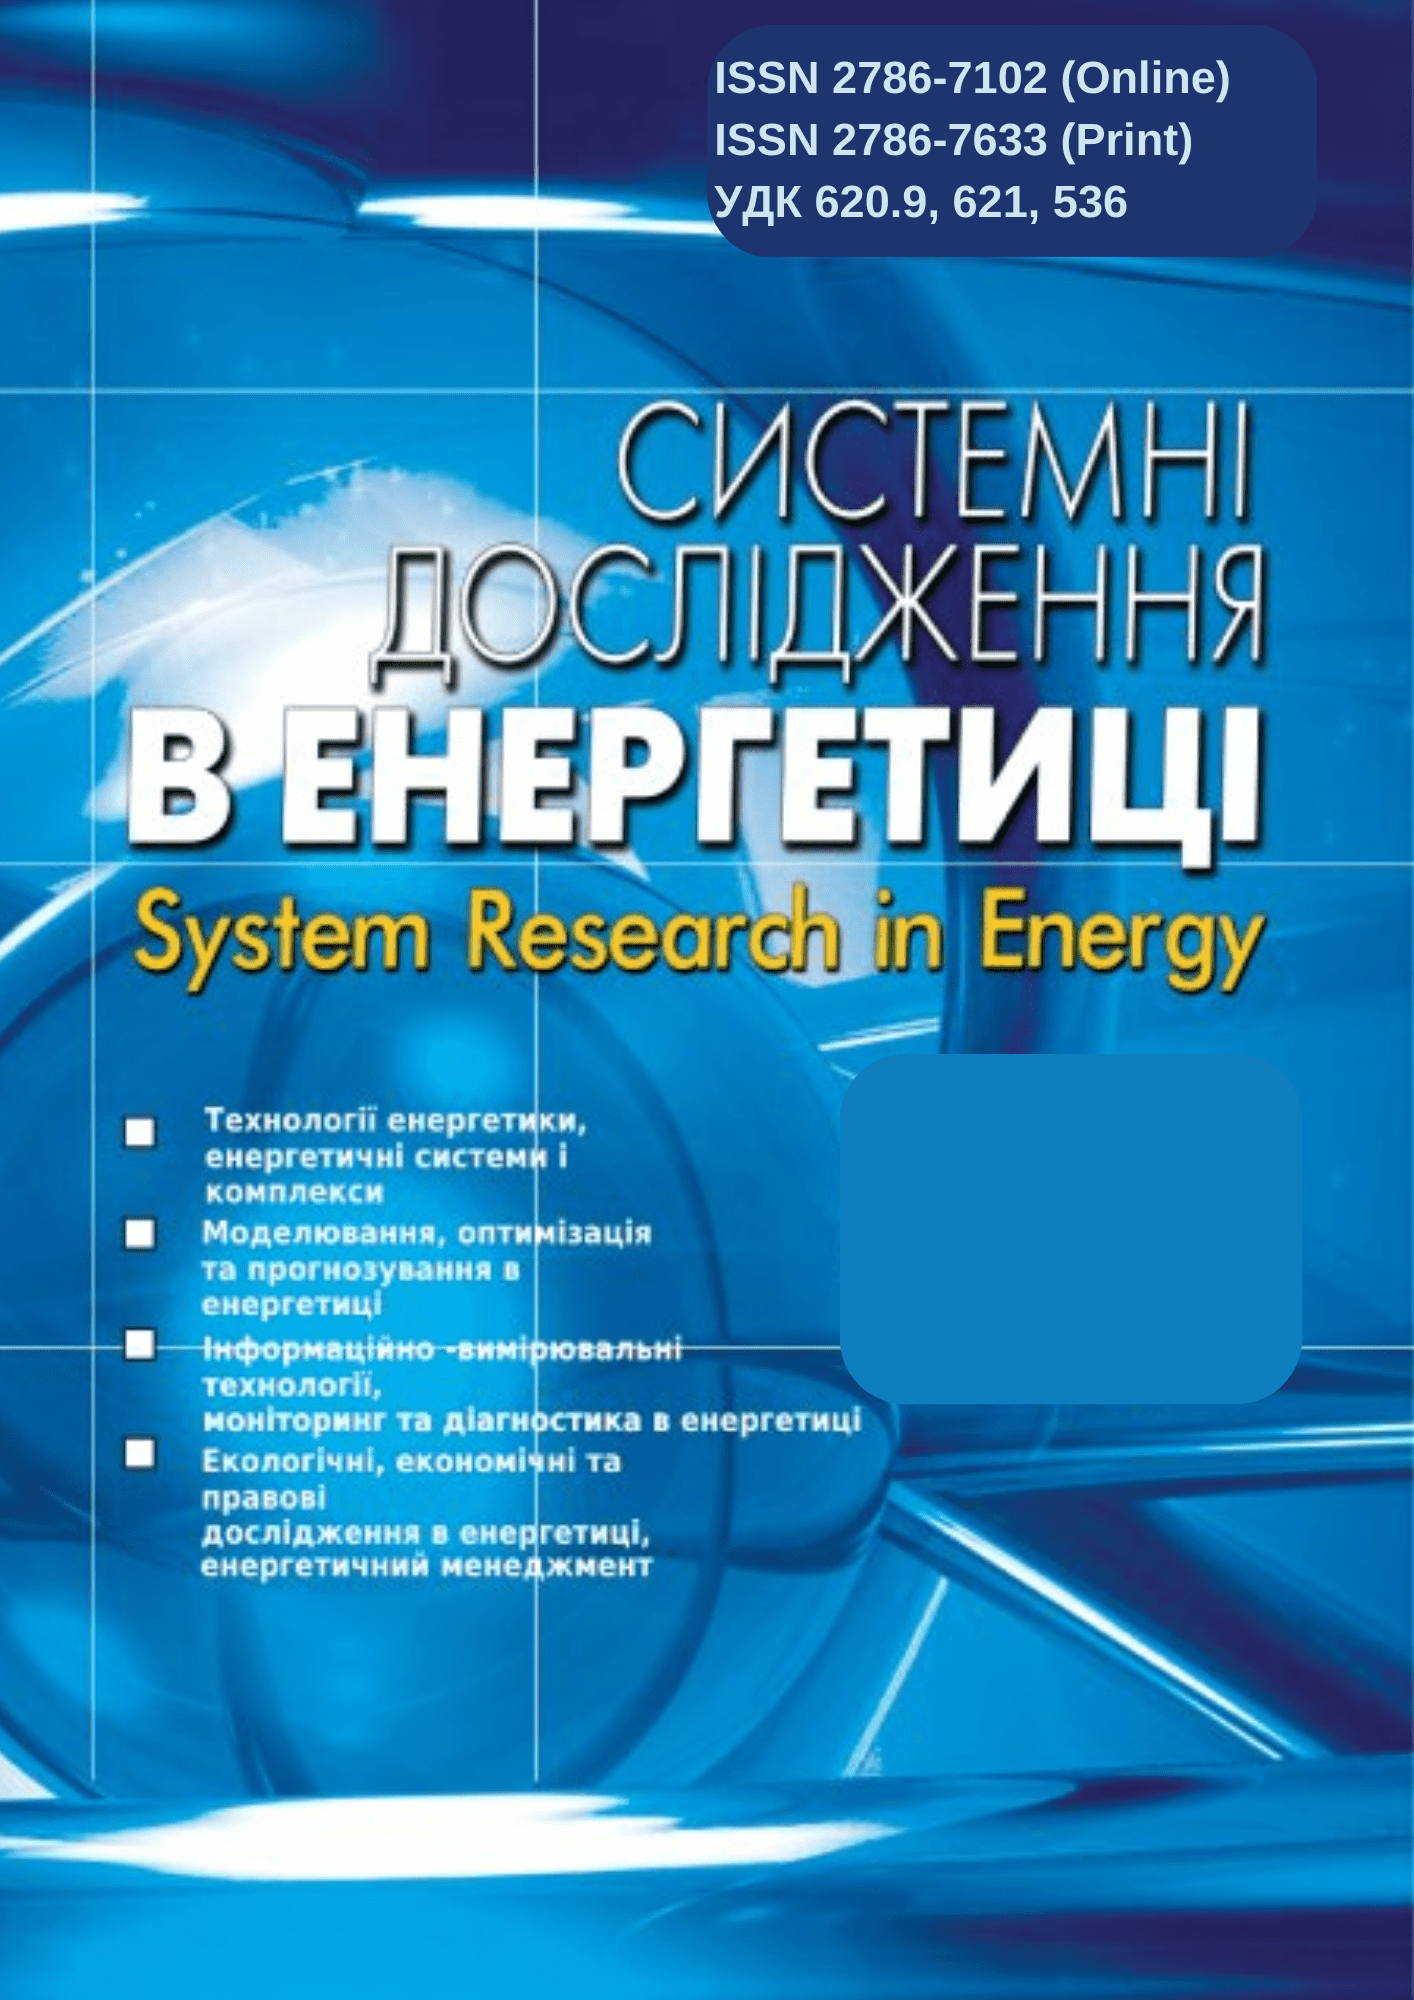 Науковий журнал «Системні дослідження в енергетиці»